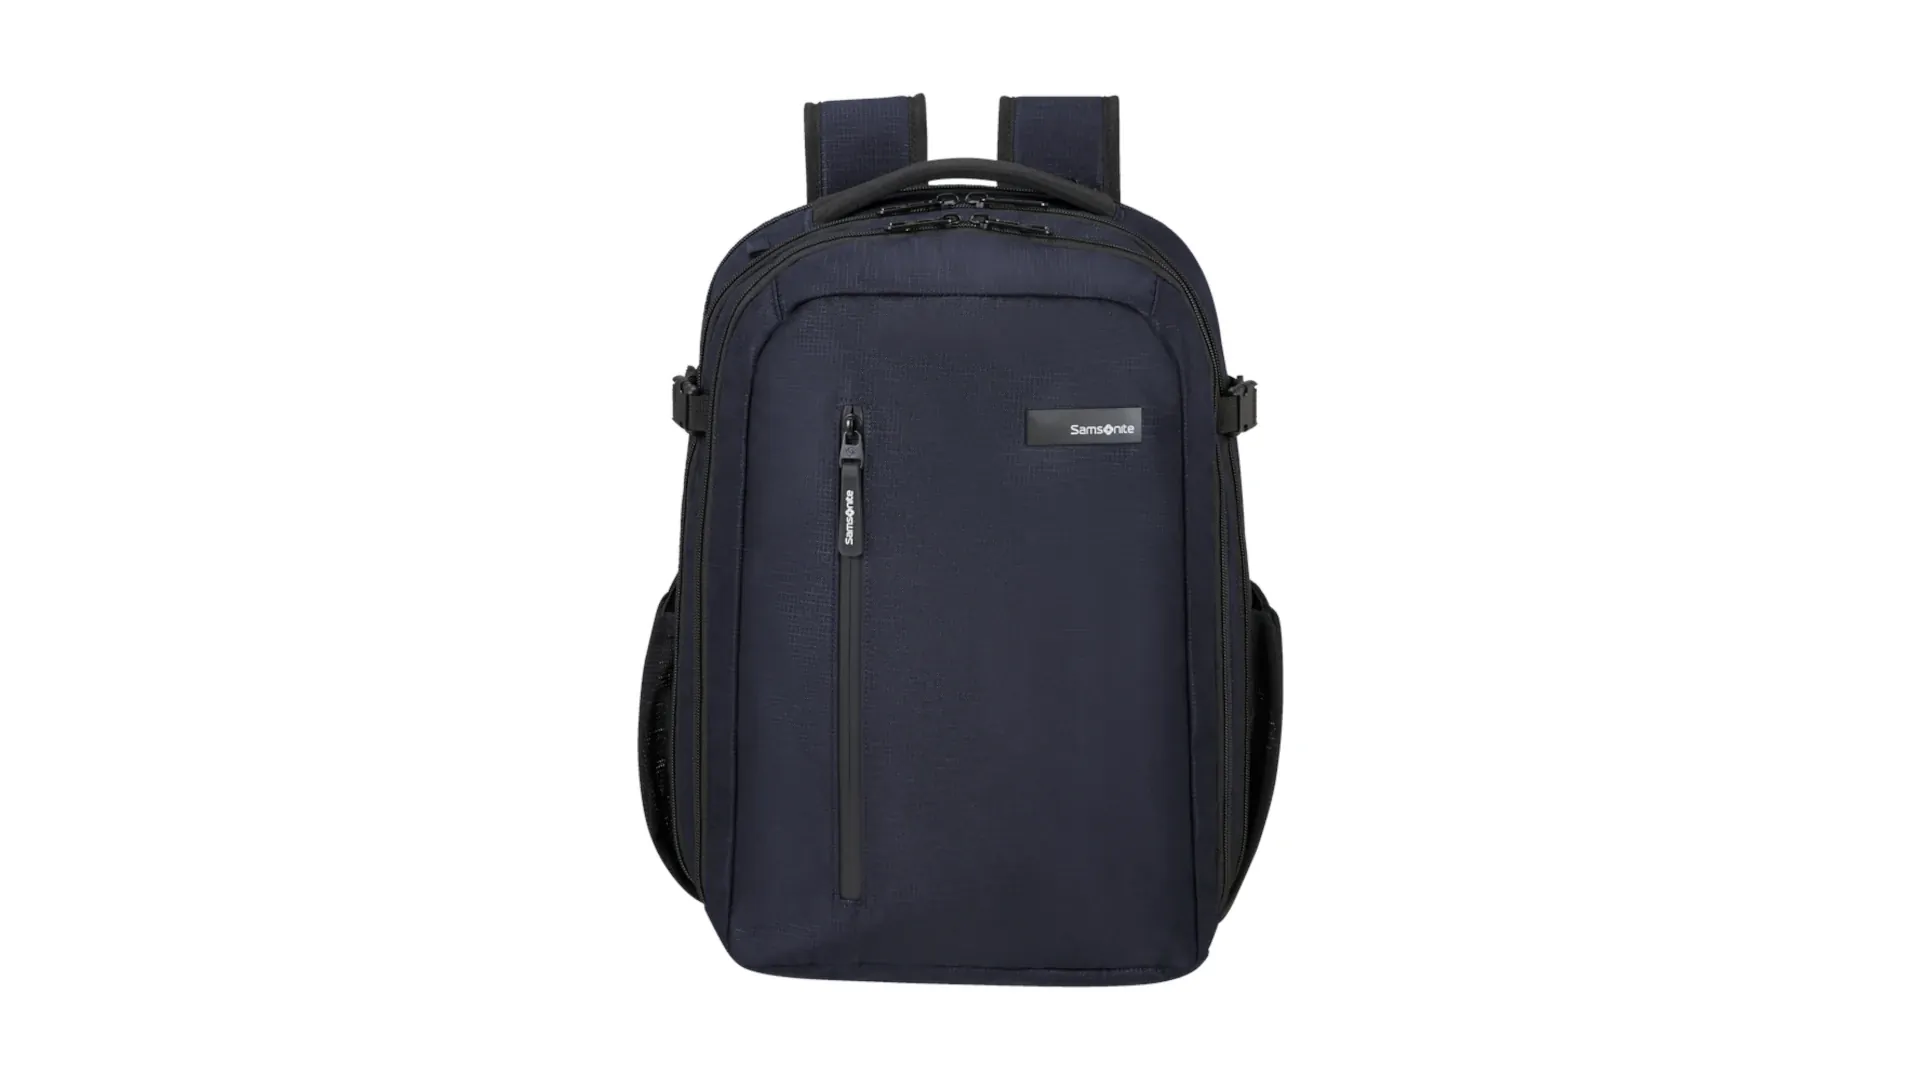 La mochila Samsonite Roader es la mochila ideal para los trabajadores que viajen mucho o quieran salir de fin de semana